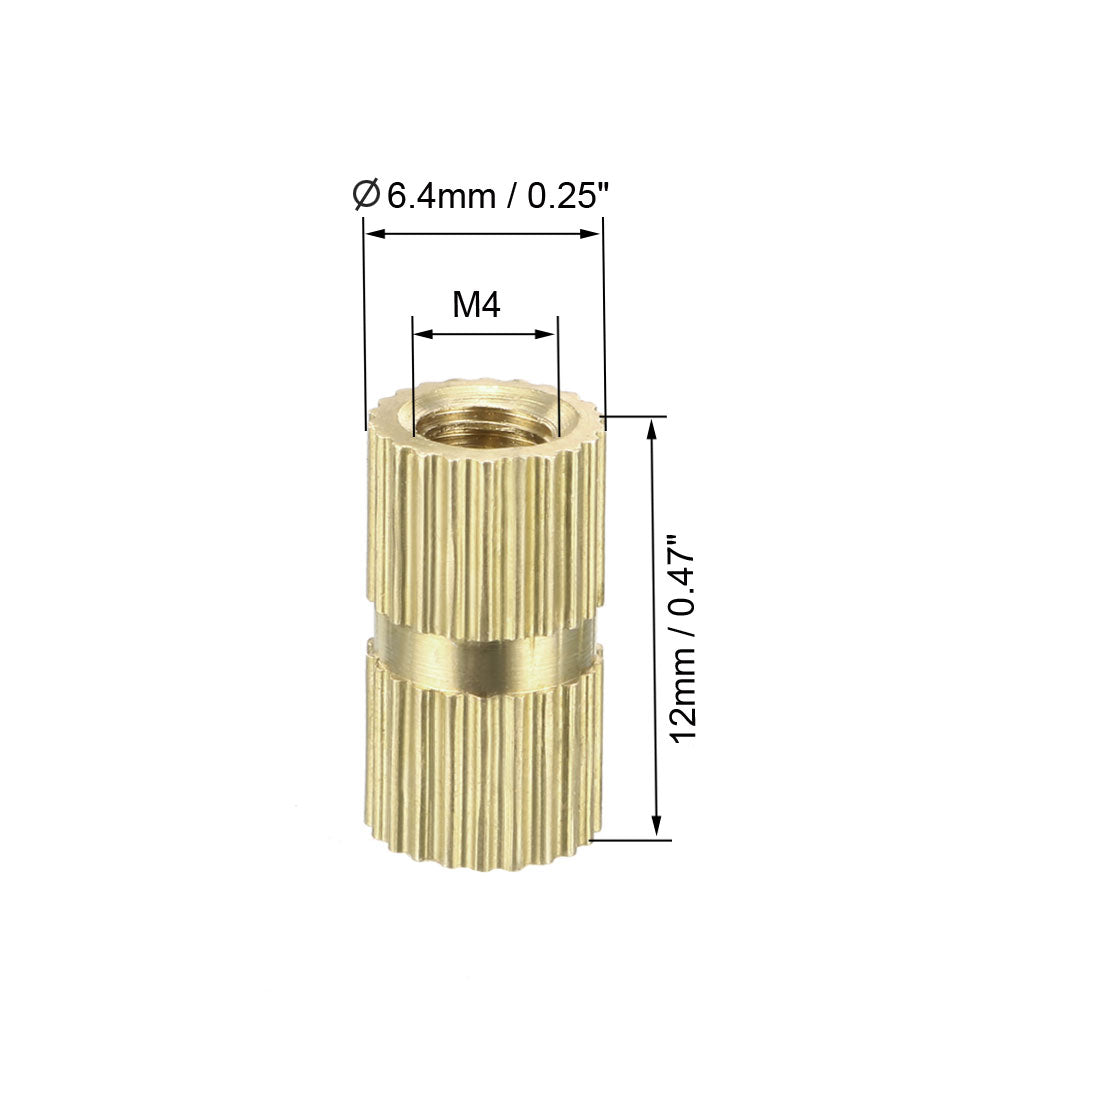 uxcell Uxcell M4 x 12mm(L) x 6.4mm(OD) Female Thread Brass Knurled Threaded Insert Embedment Nuts, 80 Pcs